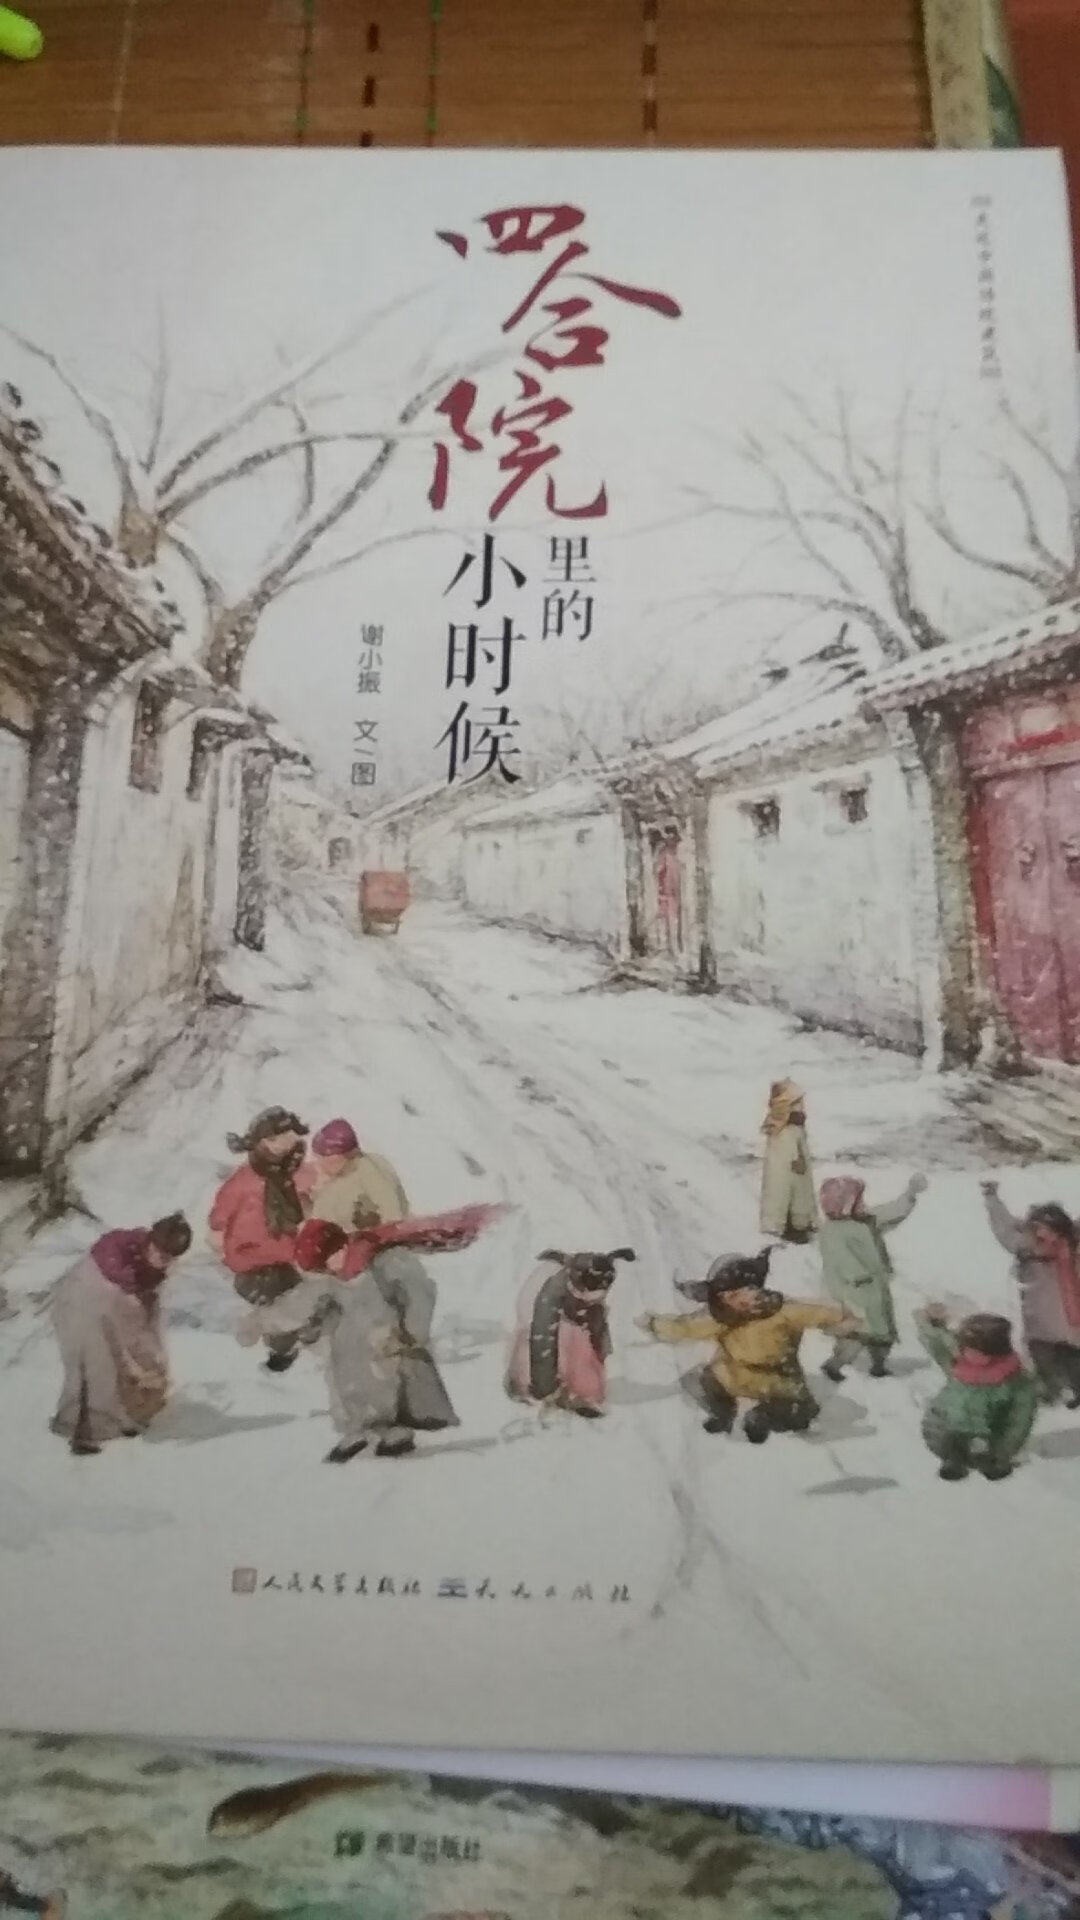 暂时没有机会带孩子到北京见识真正的四合院！从这本书里我们能够大致了解一下，走近中国传统建筑！国产绘本是越做越好了！